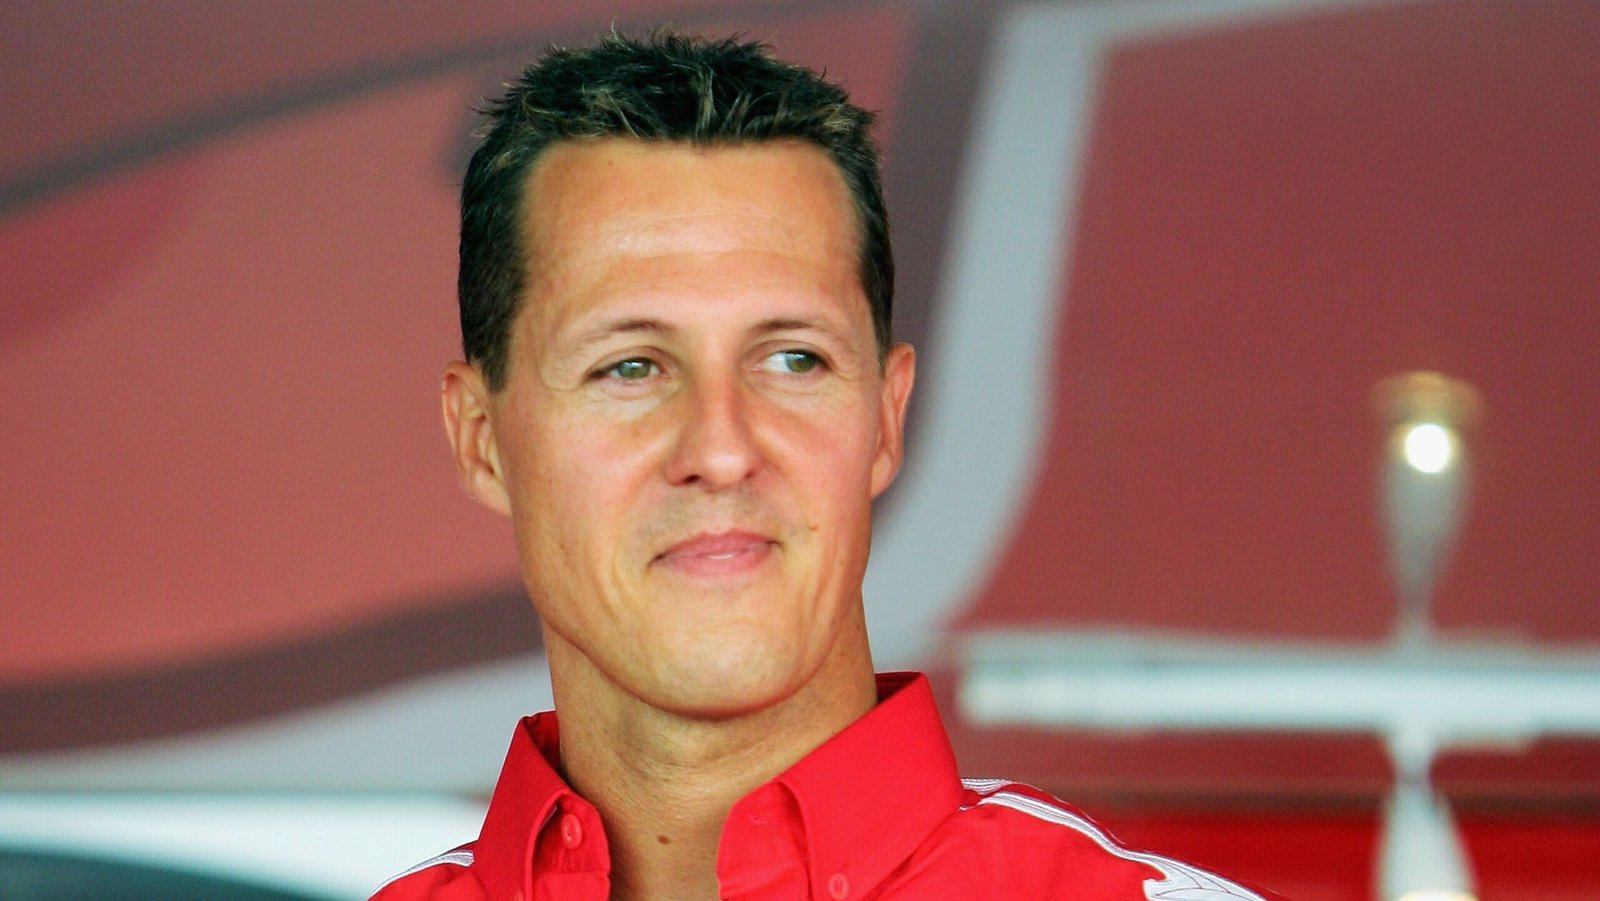 Coleção de relógios de Michael Schumacher vai a leilão por R$ 25 milhões